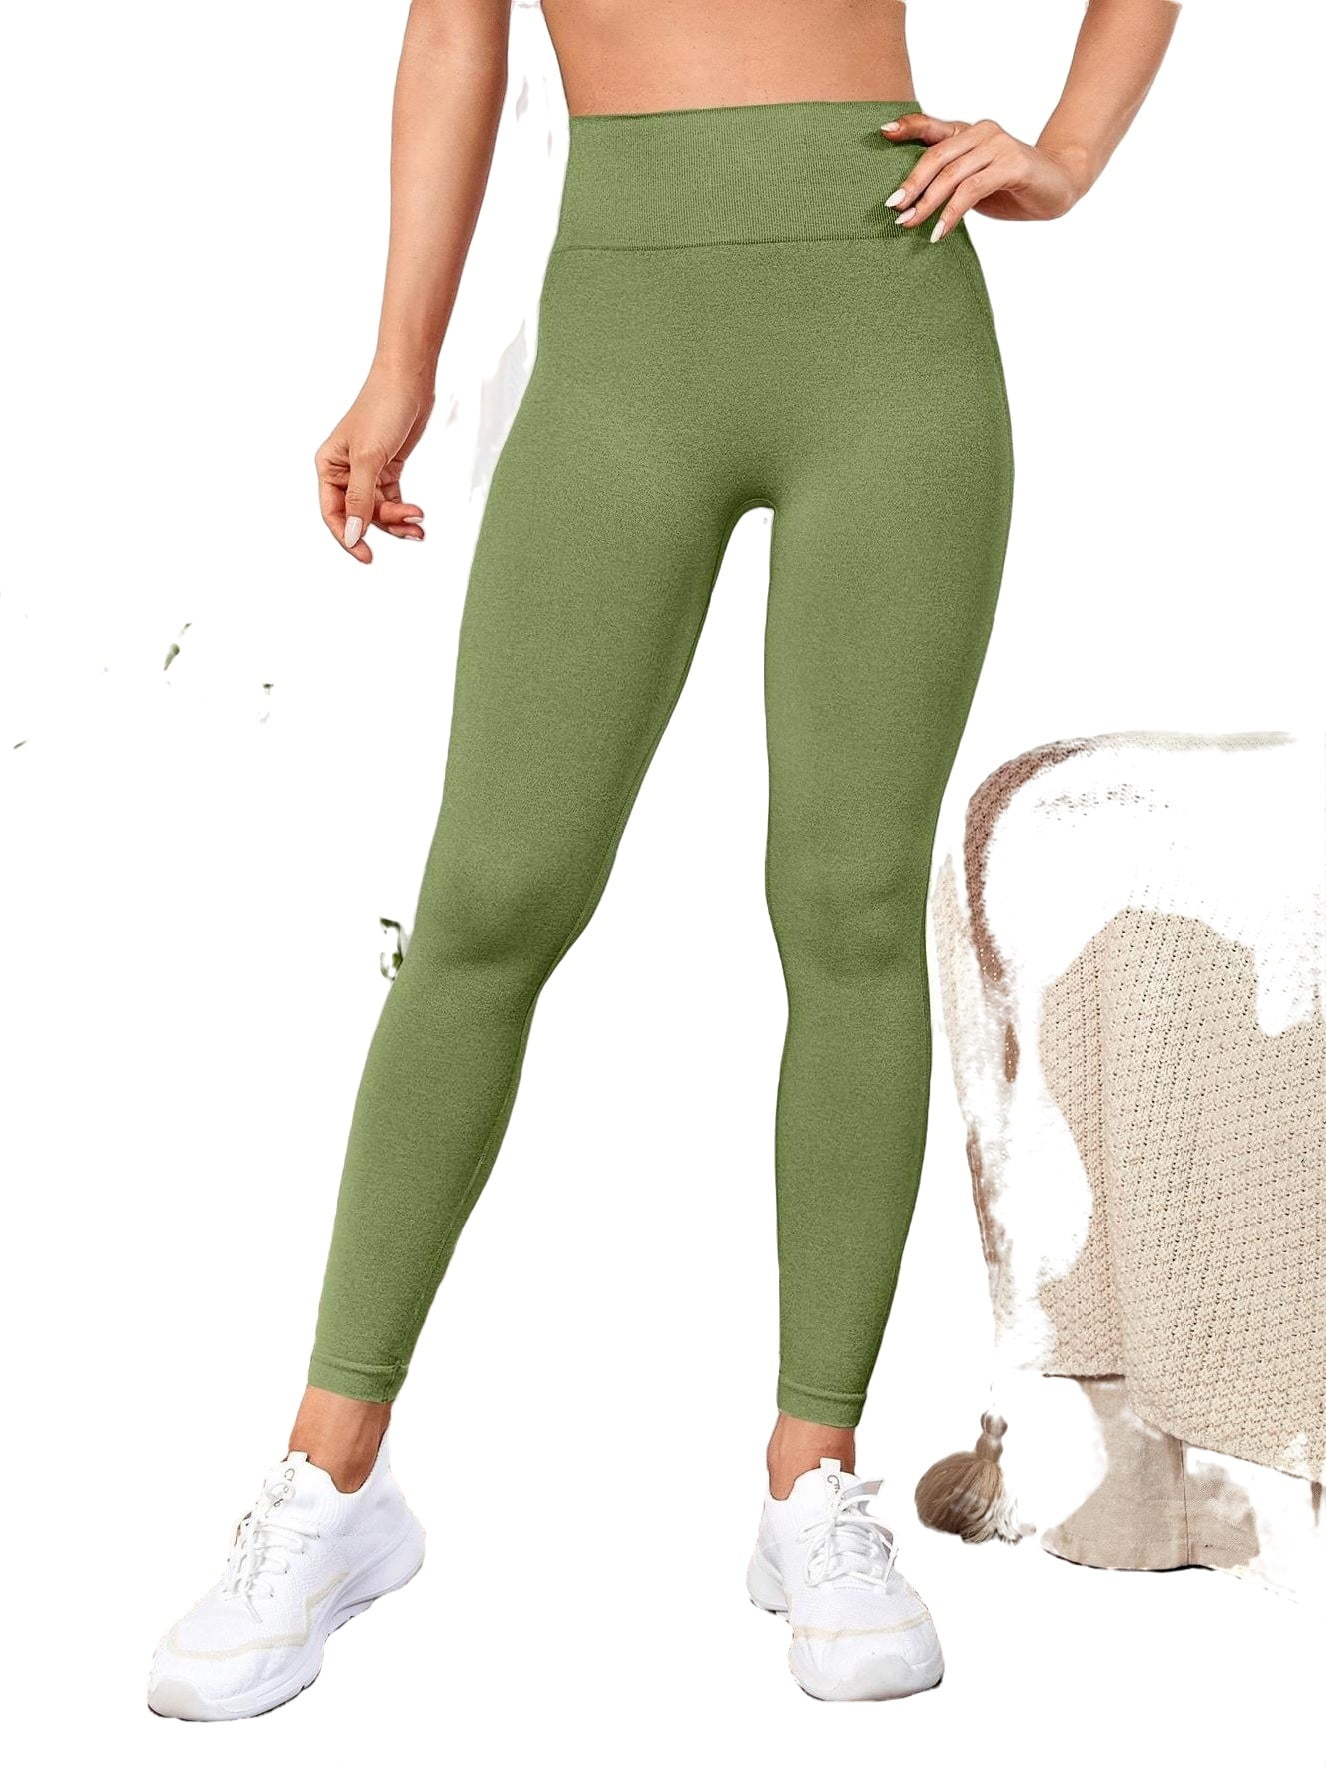 Women's Plain Lime Green Sports Leggings S (4) 